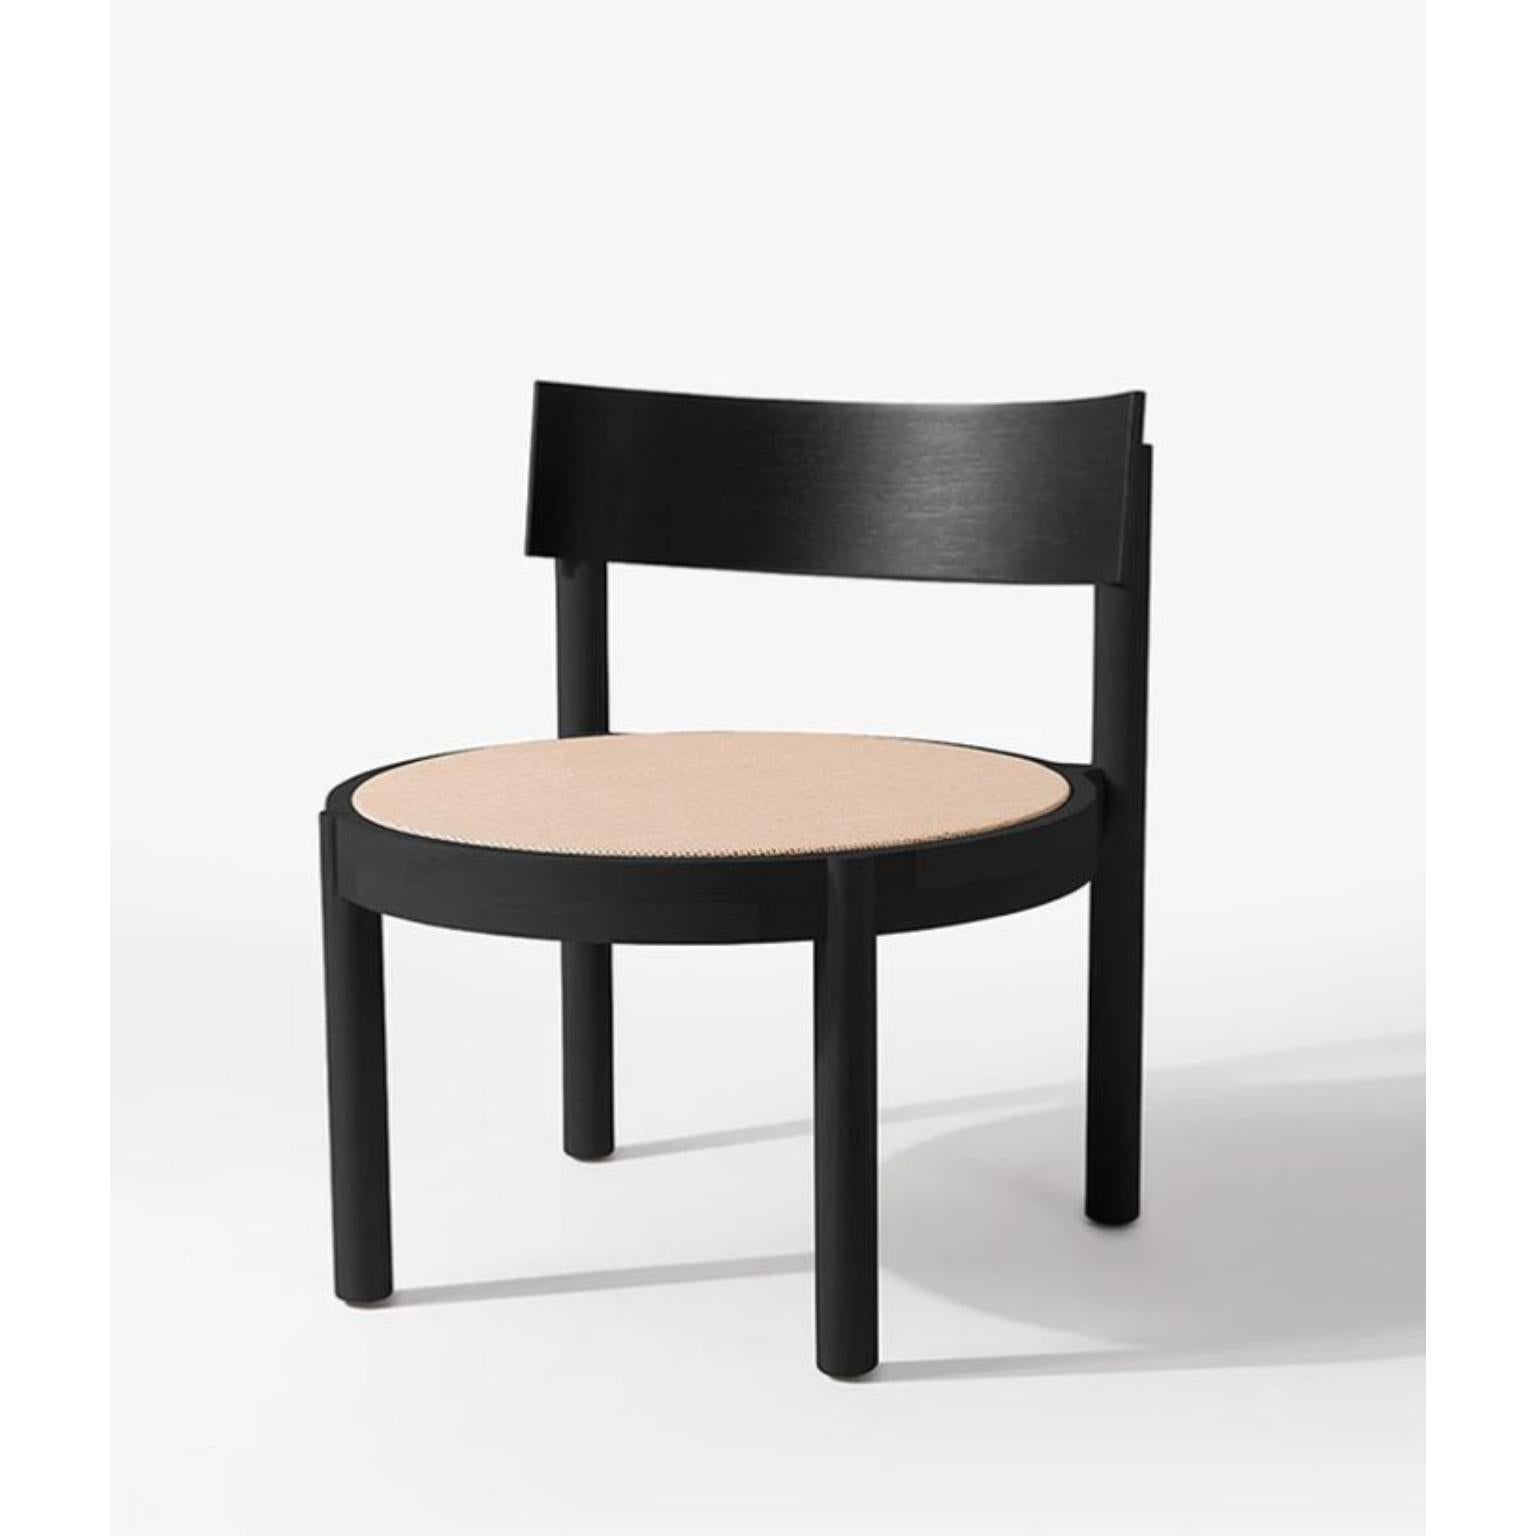 Schwarzer Gravatá Sessel von Wentz
Abmessungen: T 64 x B 60 x H 67 cm
MATERIALIEN: Tauari-Holz, Rohr/Polsterung.
Gewicht: 6,6kg / 14,5 lbs

Die Gravatá-Serie ist eine Synthese unserer Vision von funktionaler und visueller Einfachheit der Möbel. Mit